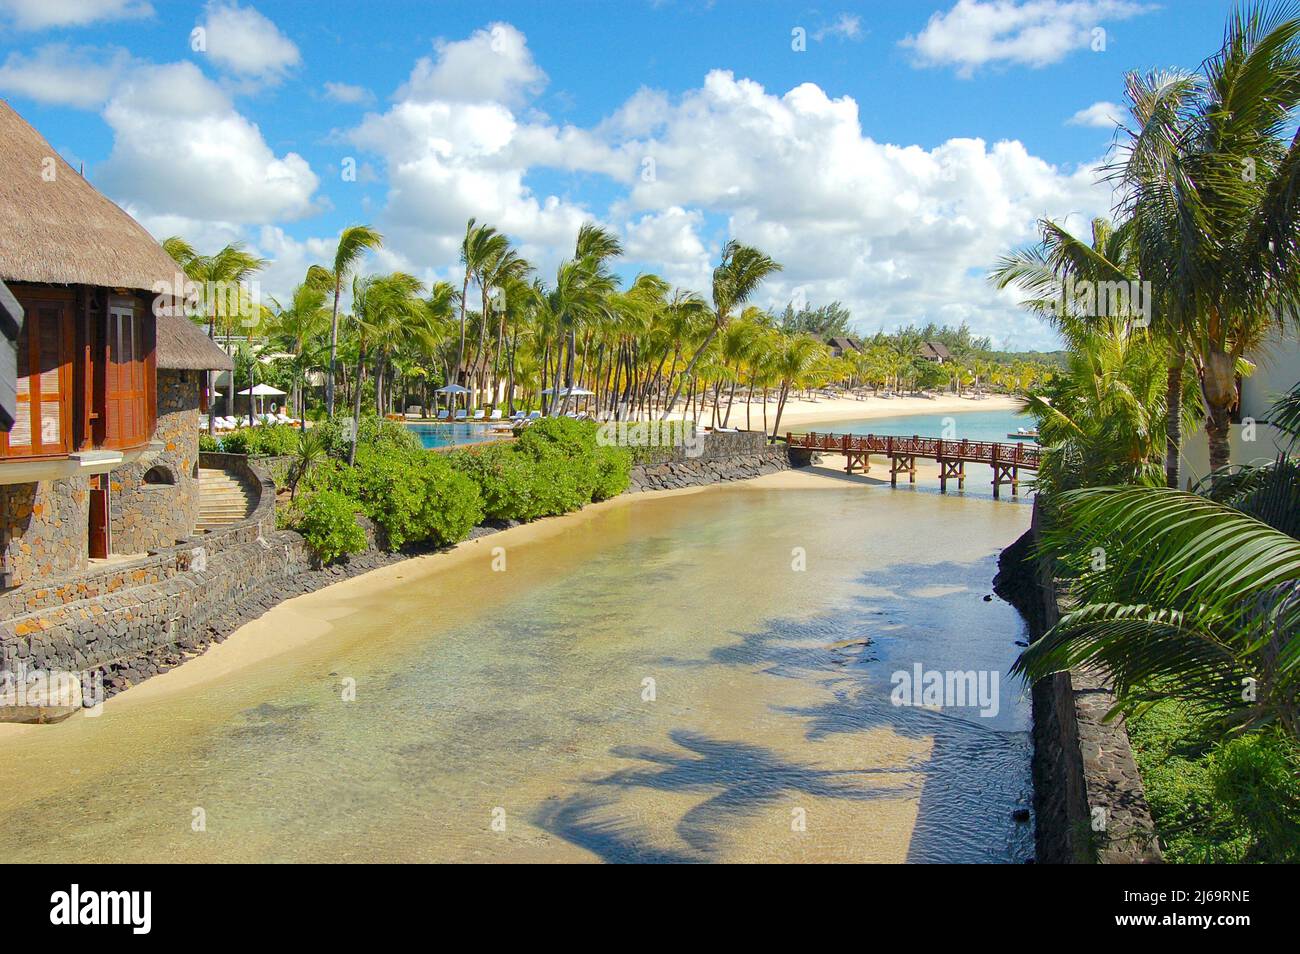 Un petit pont au-dessus d'une rivière dans un hôtel à l'île Maurice Banque D'Images